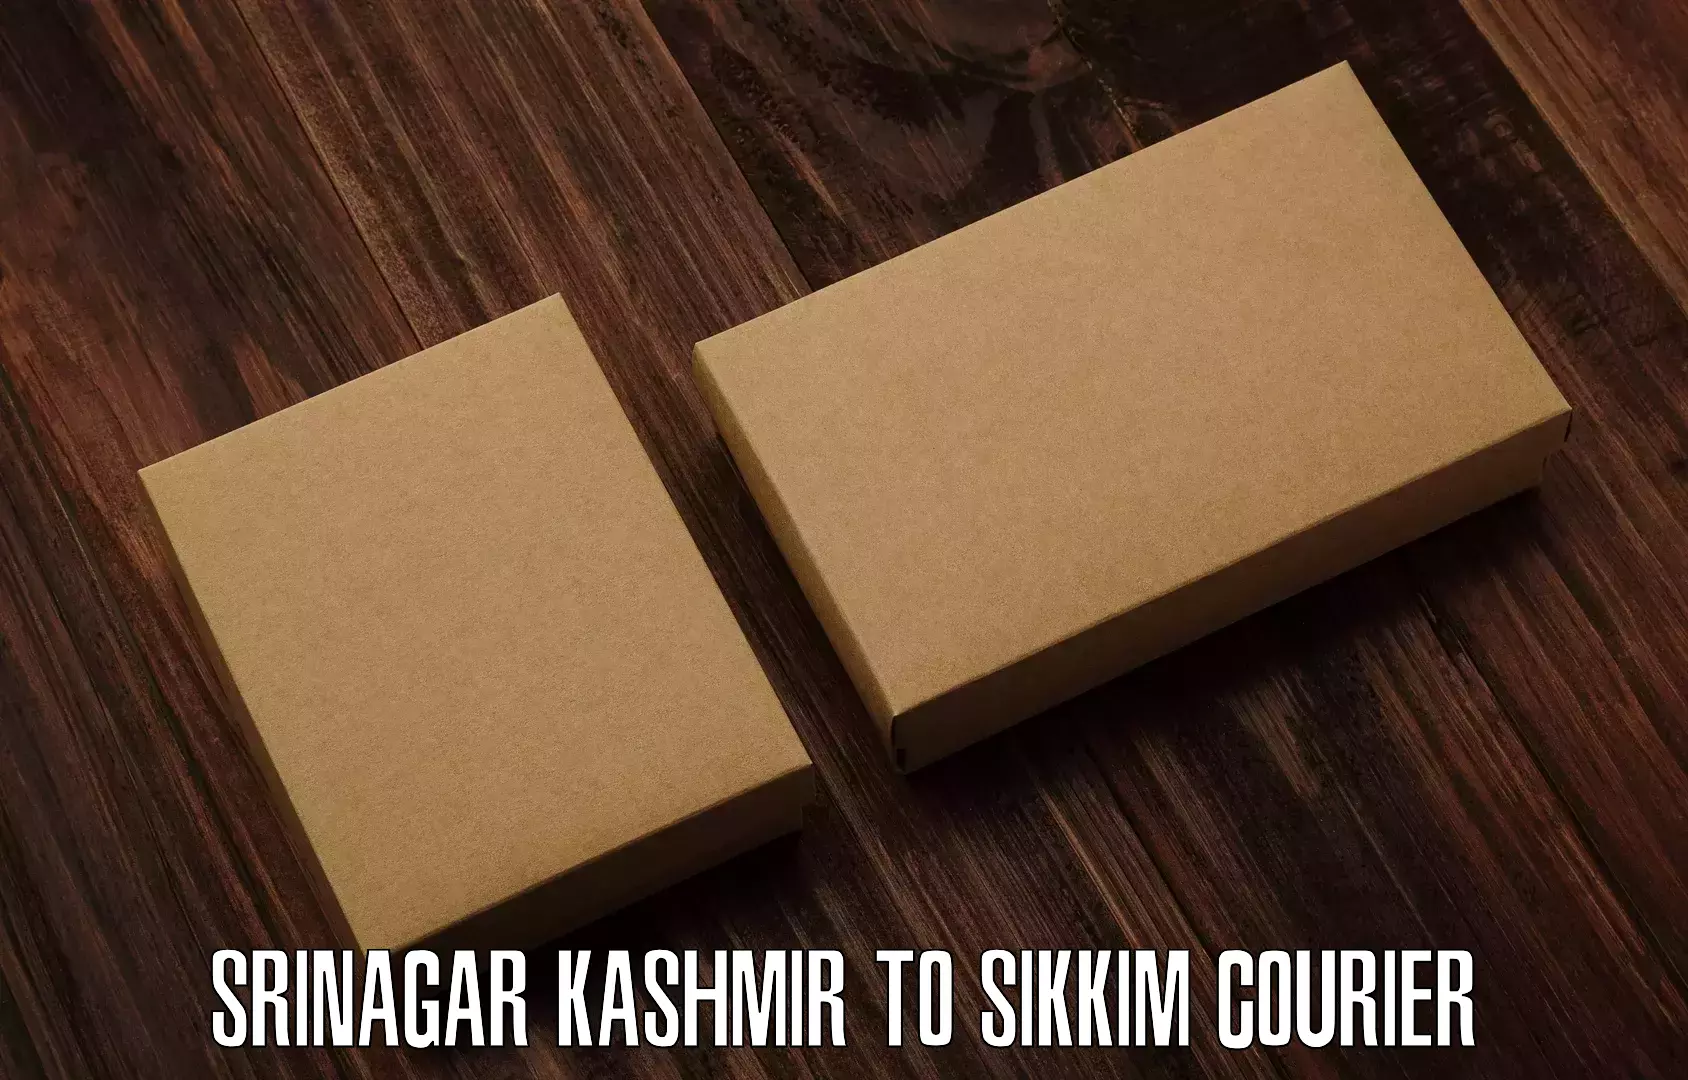 Customer-oriented courier services Srinagar Kashmir to North Sikkim